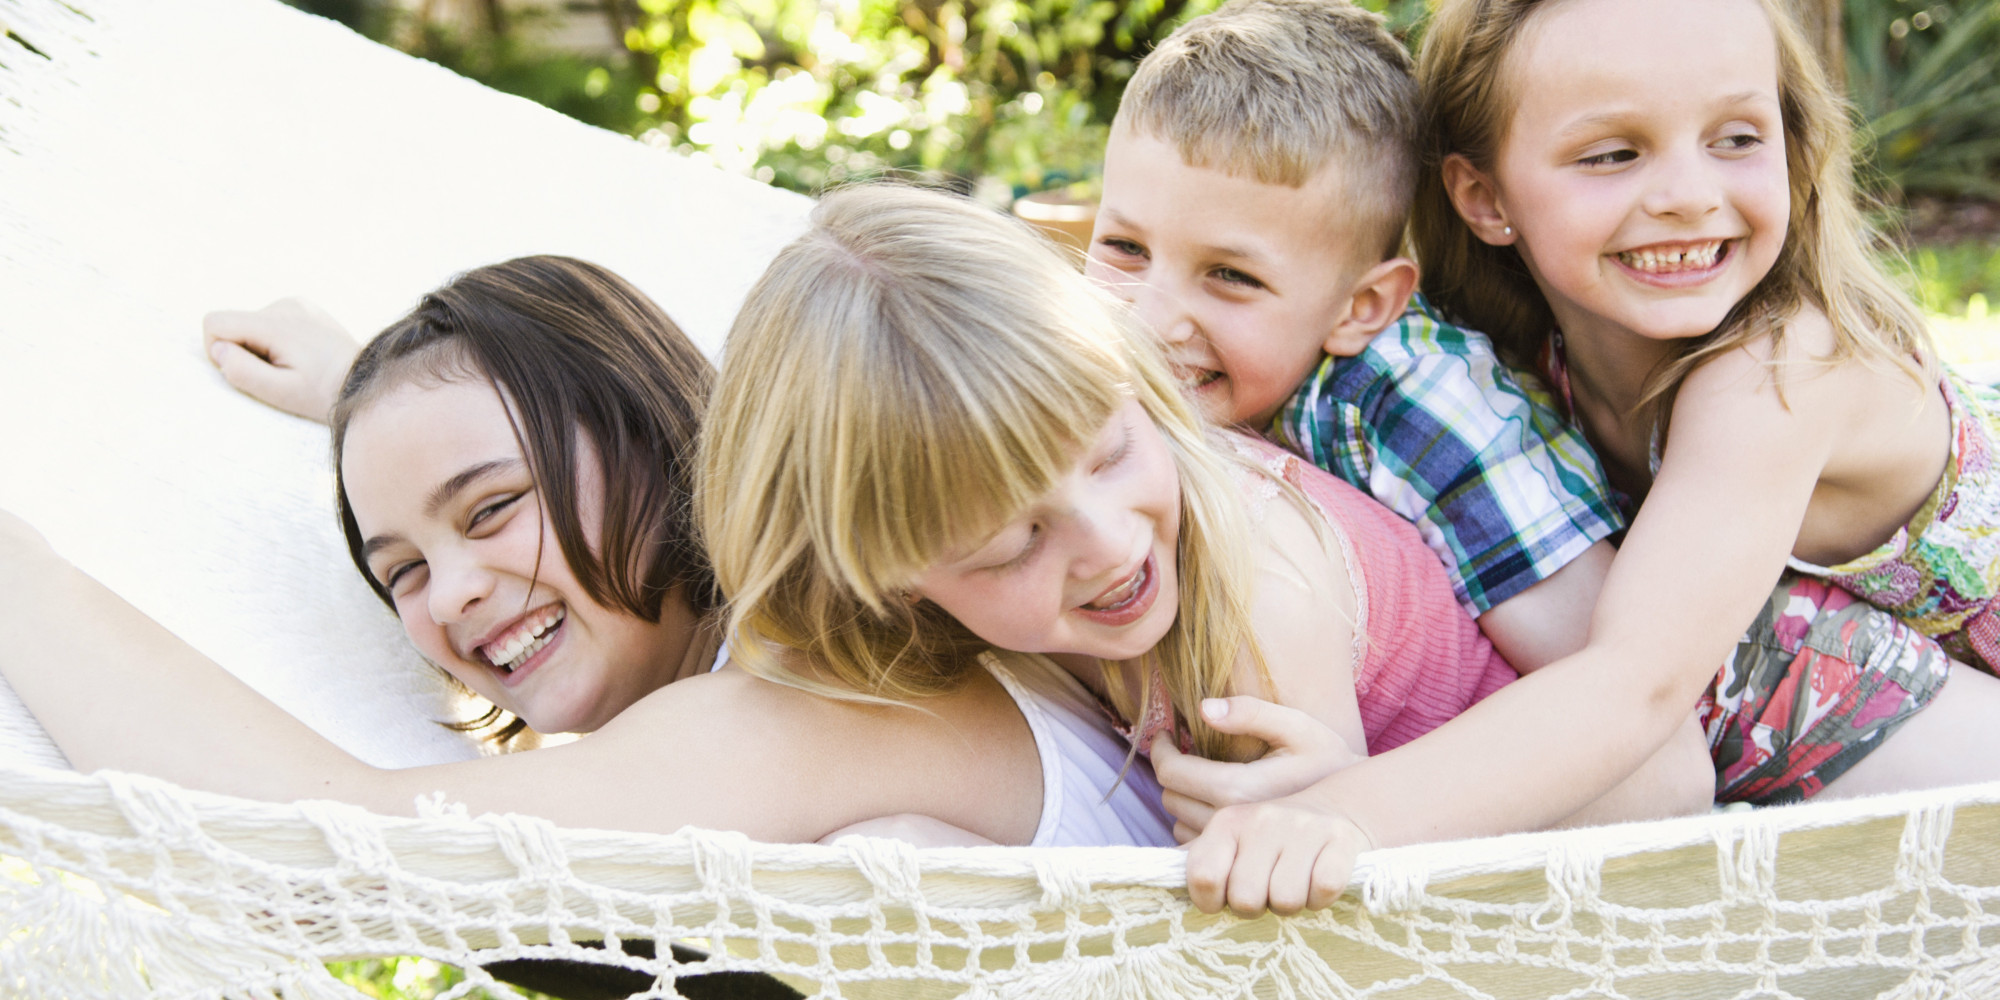 10 რამ, რაც ბავშვს ხდის უფრო ბედნიერს - ფსიქოლოგების რჩევები